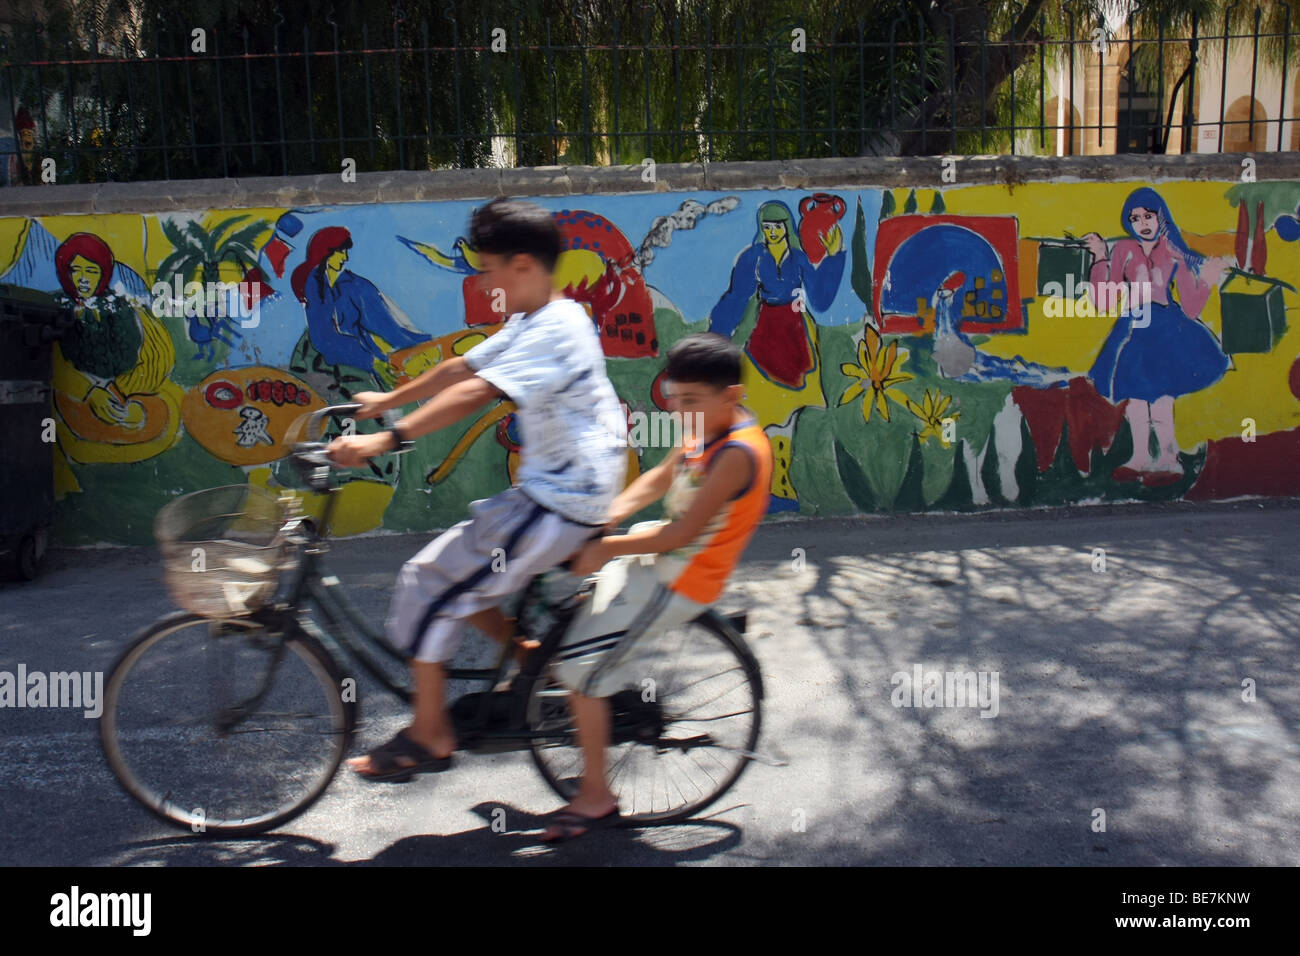 Zwei jungen auf einem Fahrrad neben einer bemalten Wand im nördlichen türkischen zypriotischen Teil von Nikosia. Stockfoto